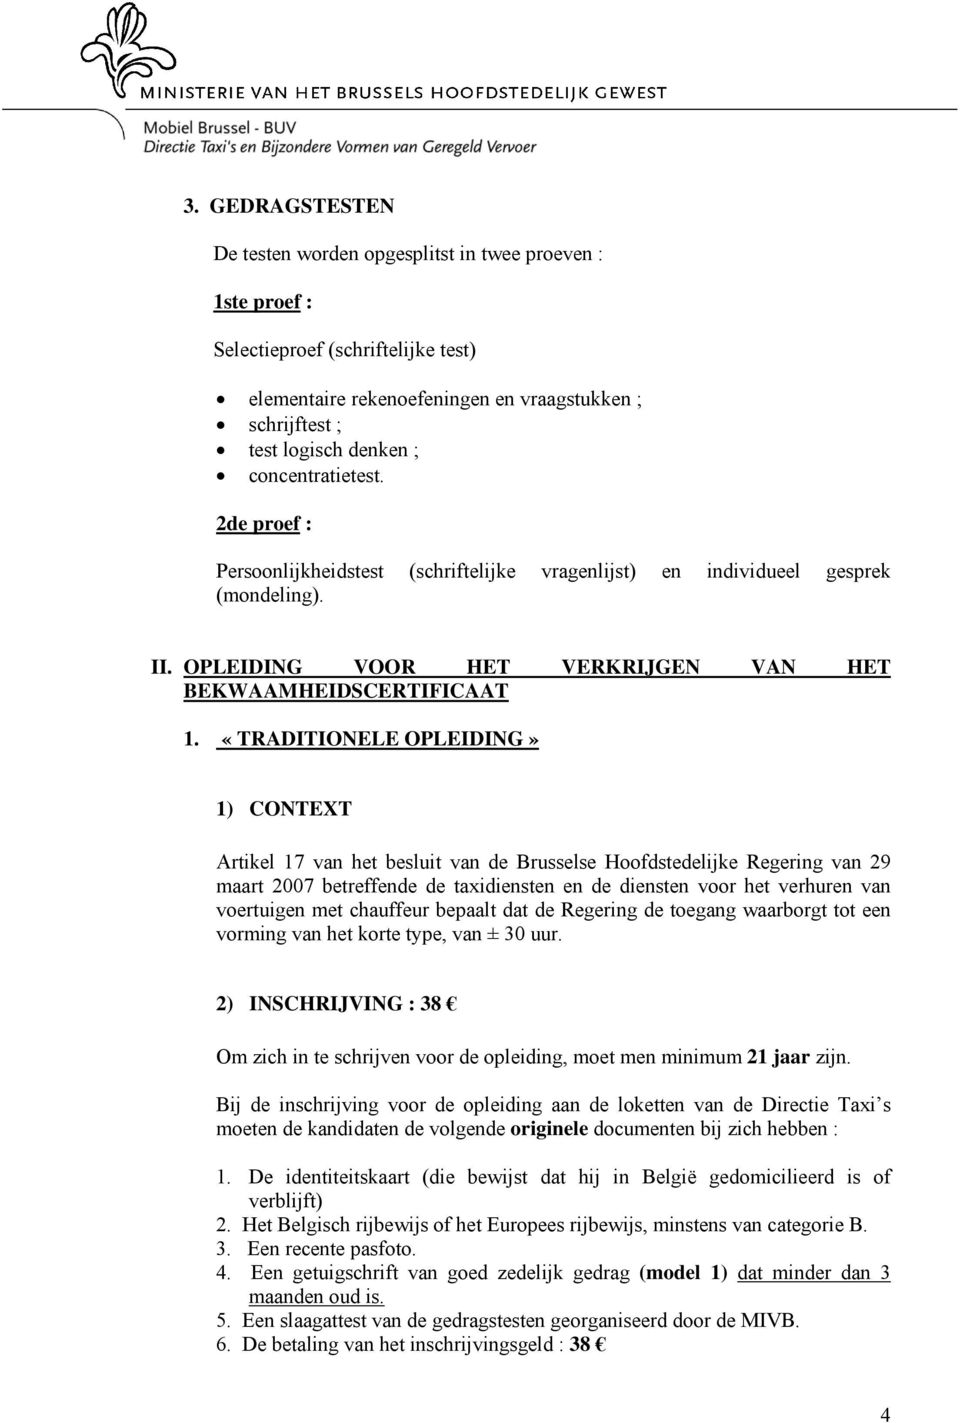 «TRADITIONELE OPLEIDING» 1) CONTEXT Artikel 17 van het besluit van de Brusselse Hoofdstedelijke Regering van 29 maart 2007 betreffende de taxidiensten en de diensten voor het verhuren van voertuigen